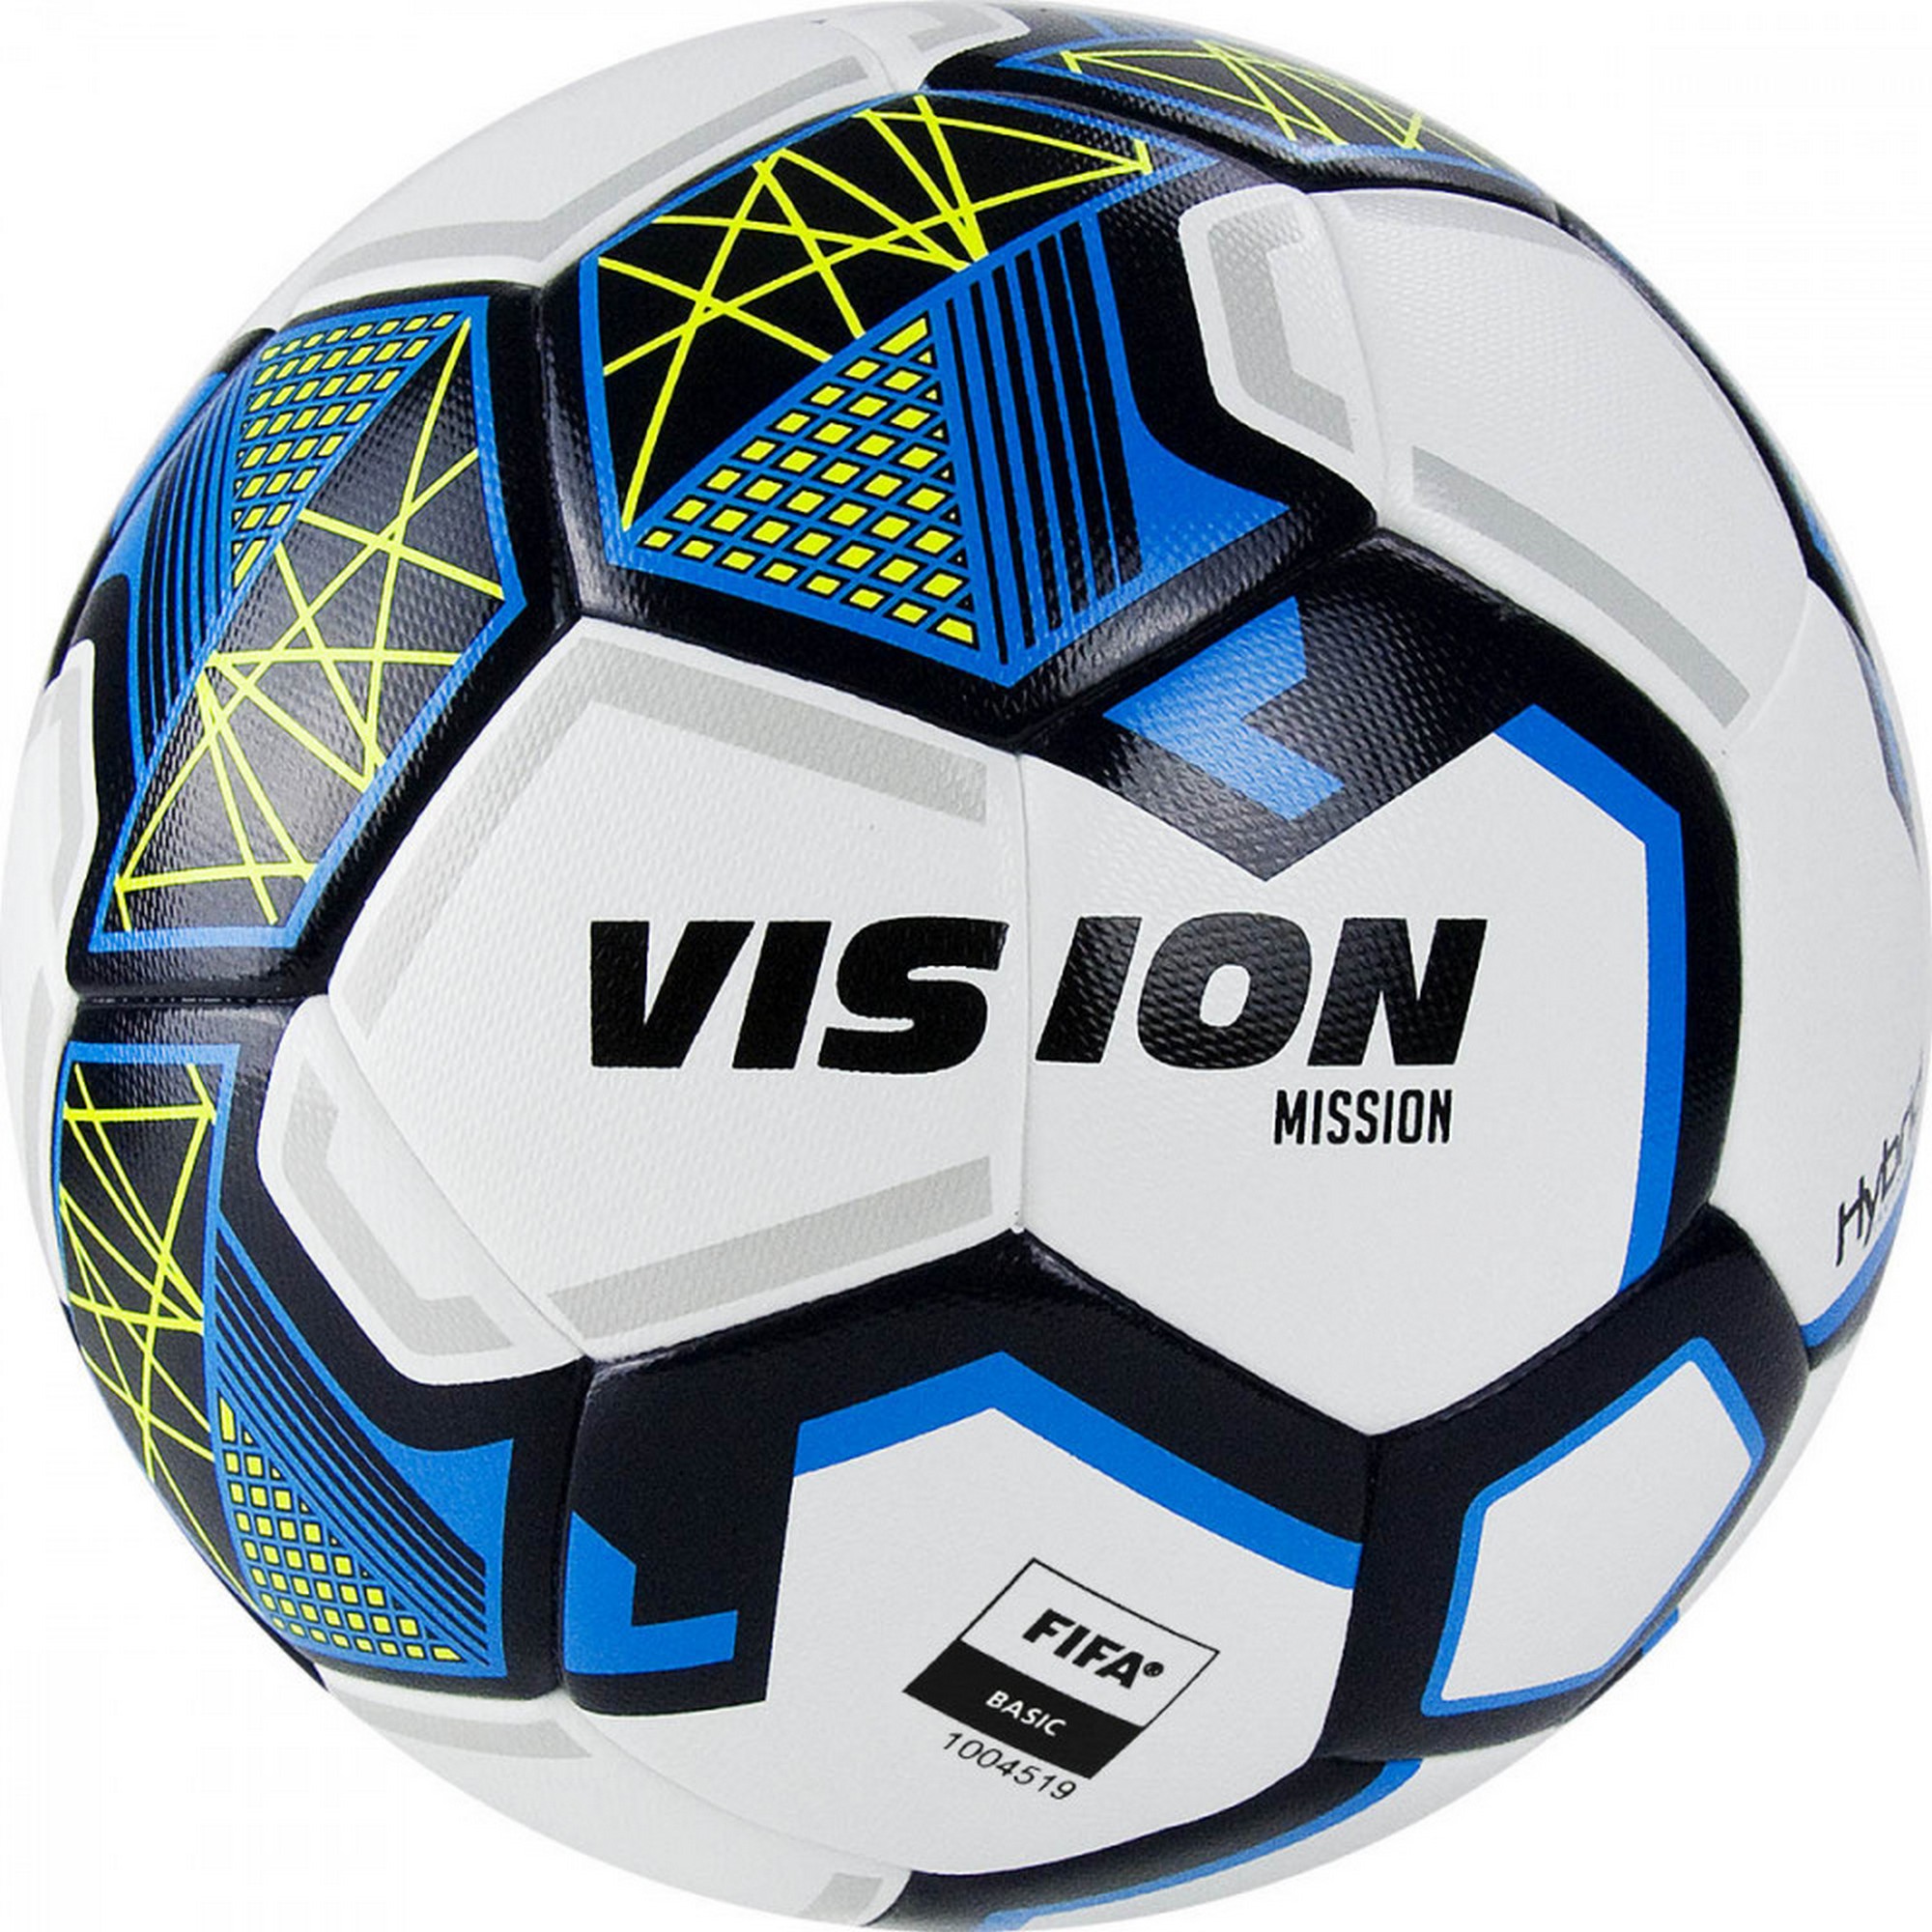   Torres Vision Mission, FIFA Basi FV321075 .5